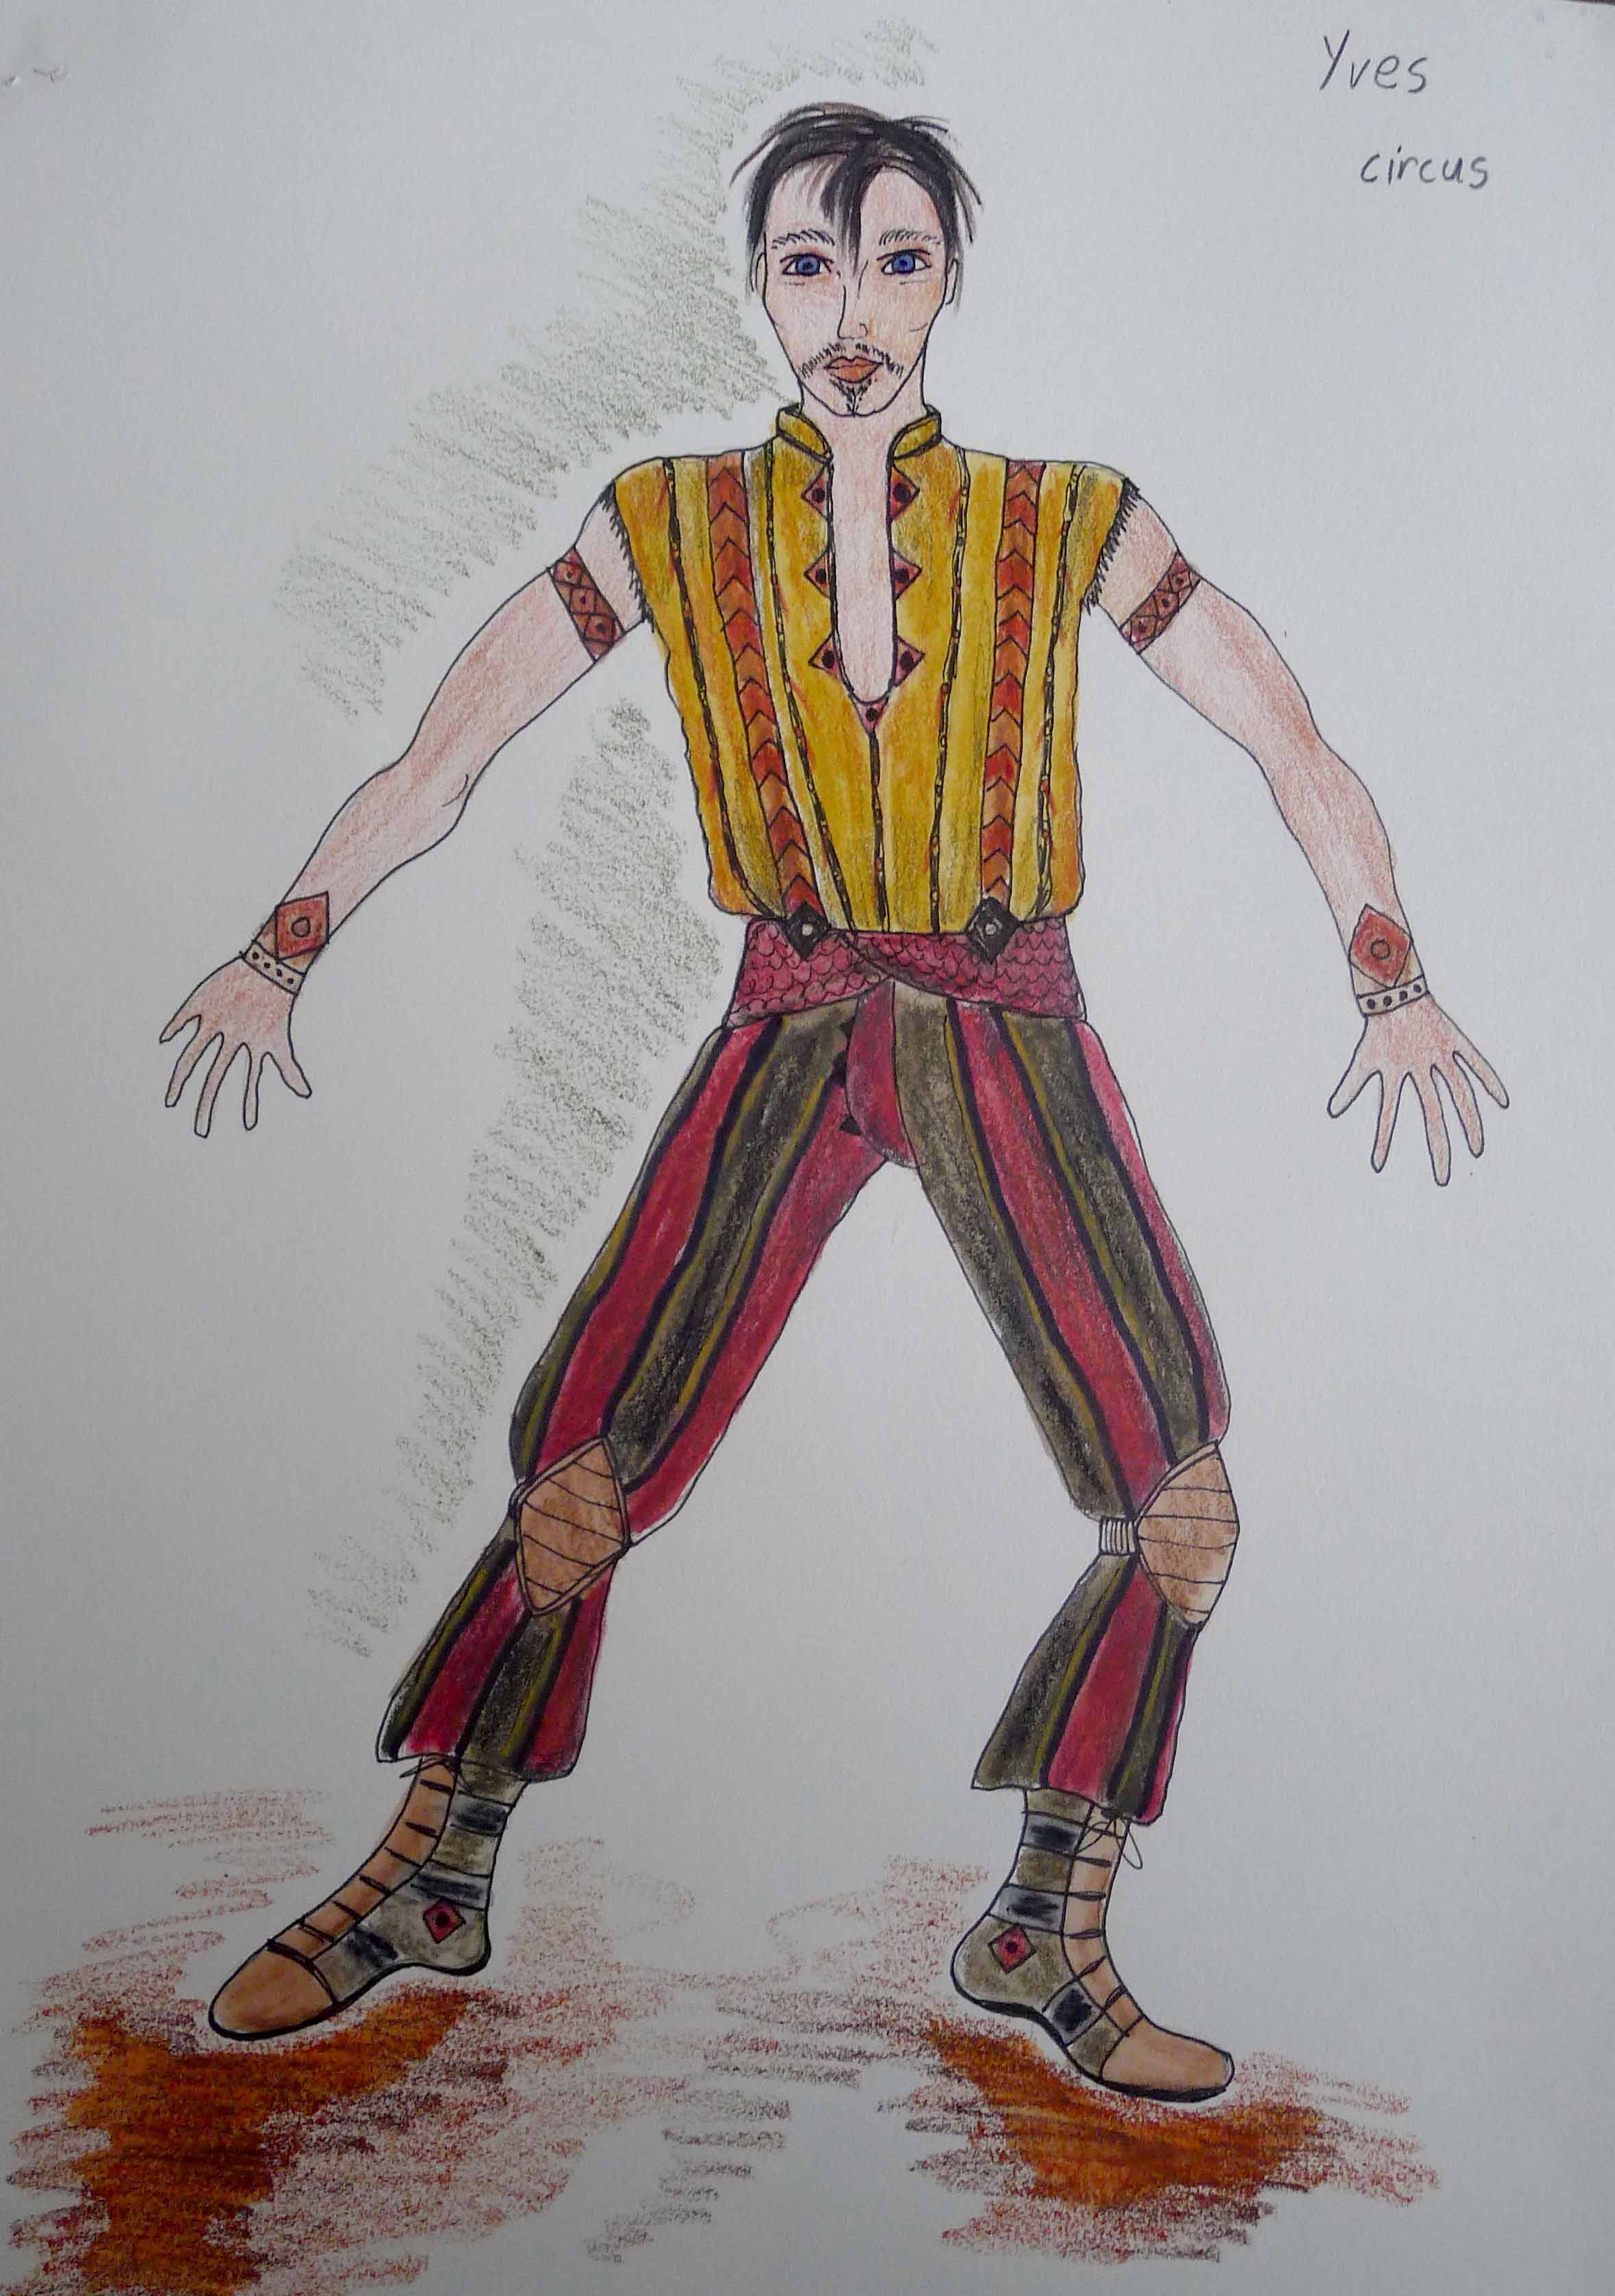  Yve in circus costume 